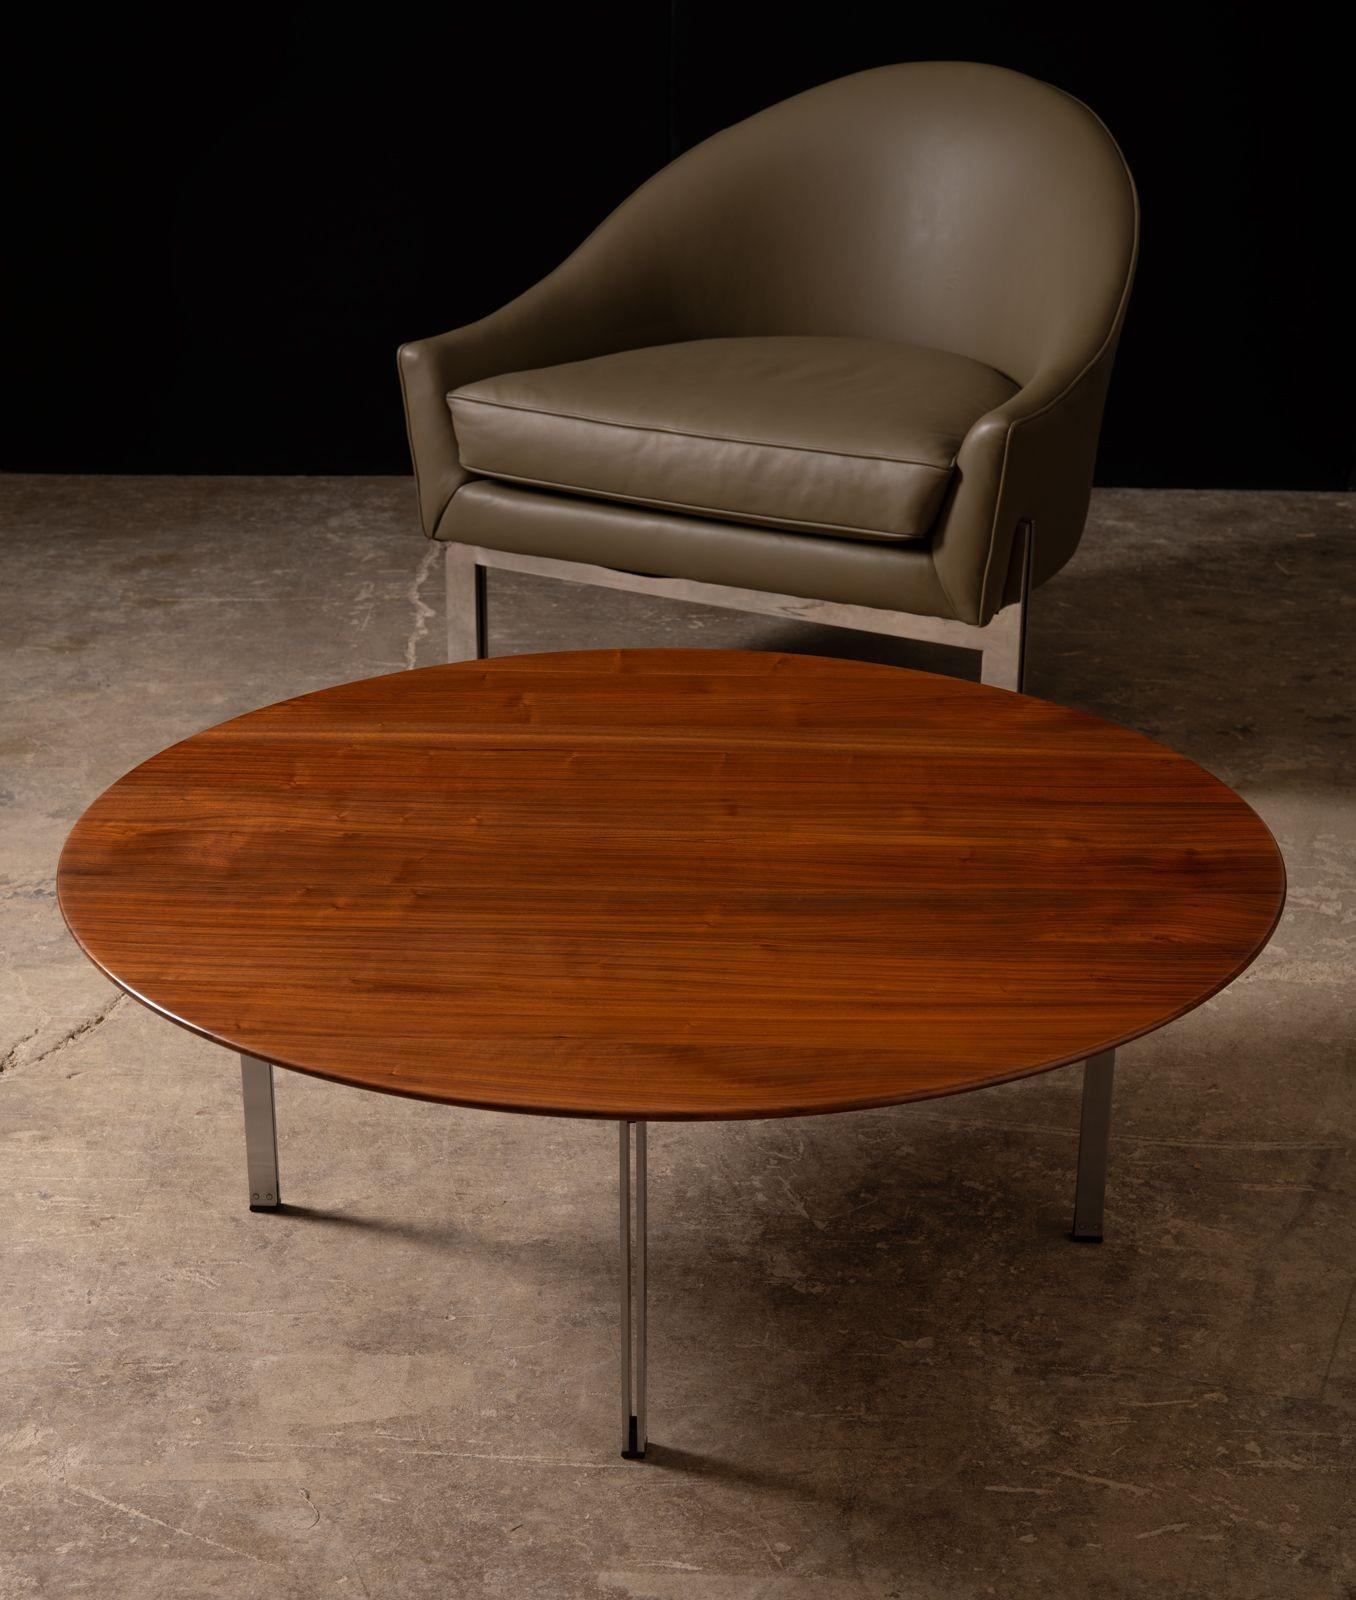 Früher, von Florence Knoll entworfener Parallelbar-Cocktailtisch mit einer Platte aus Massivholz und satinierten Stahlbeinen.
Nach dem höchstmöglichen Standard restauriert.
Sehr schwer und massiv.